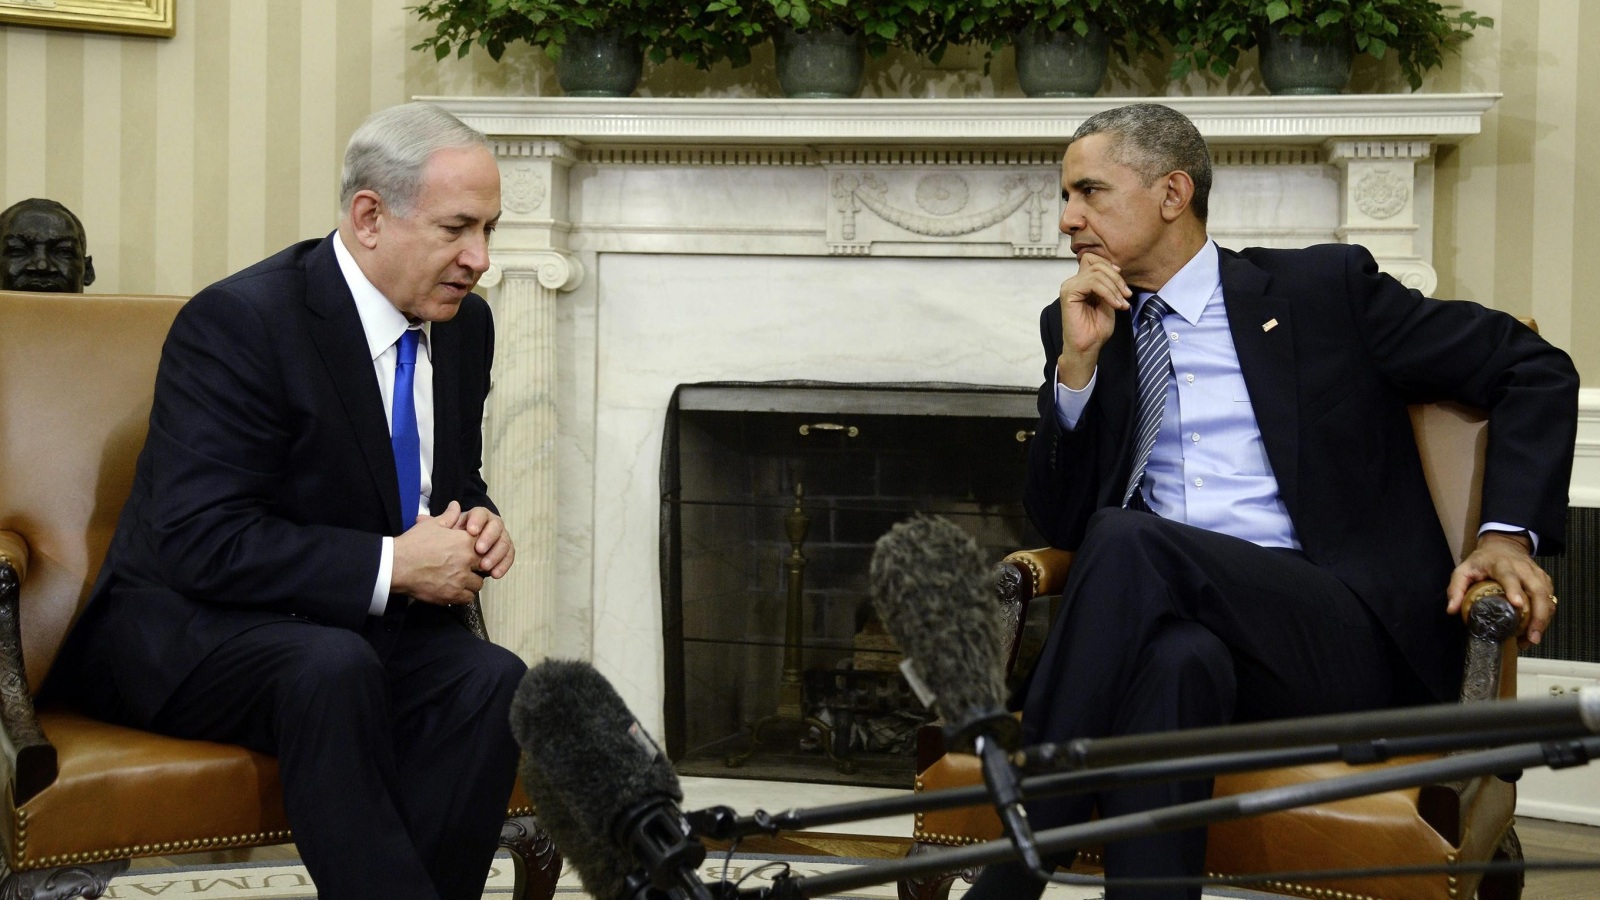 ‪أوباما ورئيس الوزراء الإسرائيلي بنيامين نتنياهو سبق أن التقيا بأكثر من مناسبة‬ أوباما ورئيس الوزراء الإسرائيلي بنيامين نتنياهو سبق أن التقيا بأكثر من مناسبة (الأوروبية)